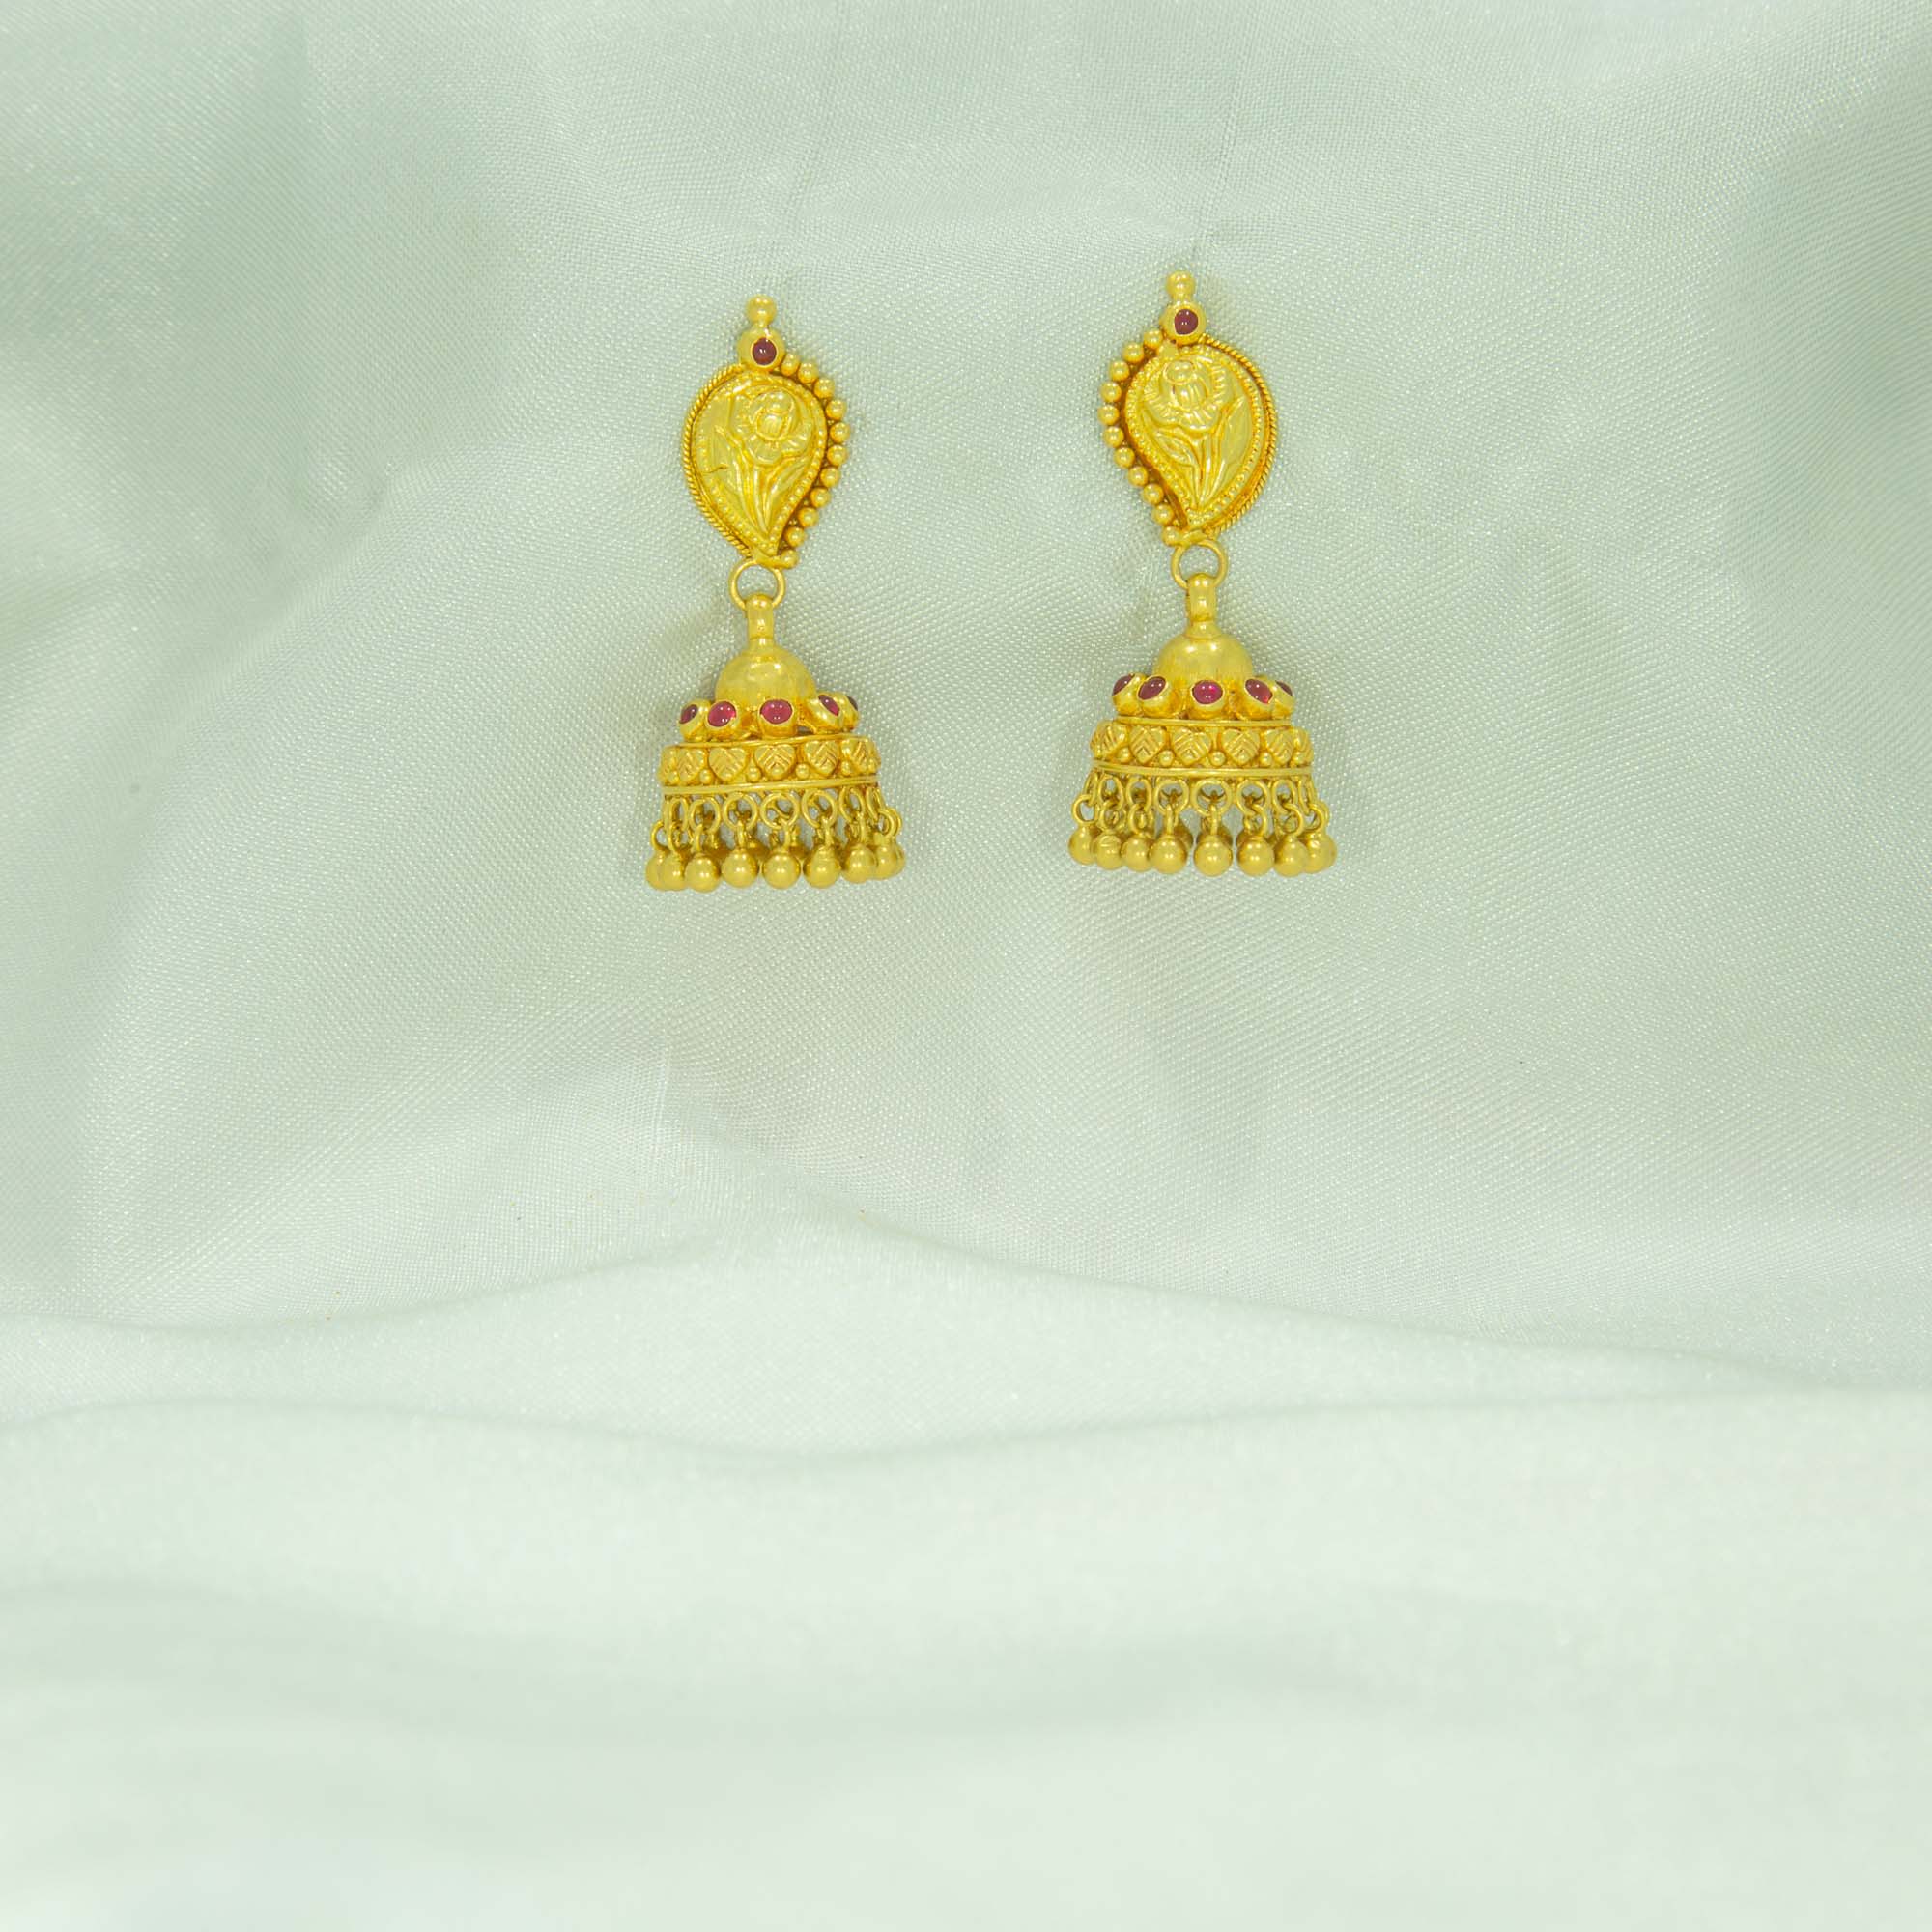 Simple 22kt gold earrings design